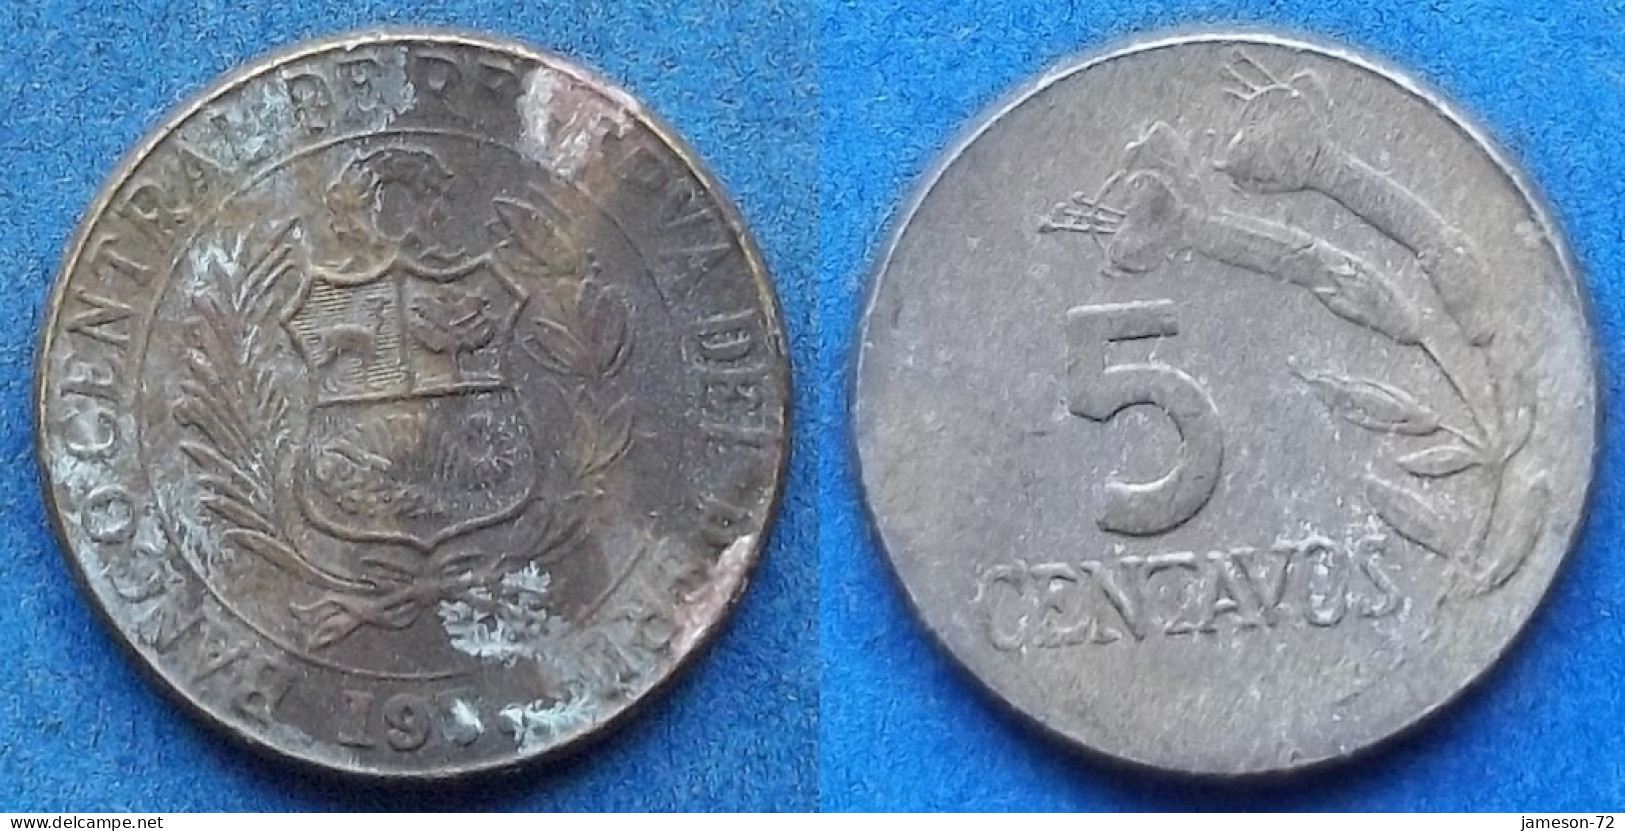 PERU - 5 Centavos 1970 "Flower Sprig" KM# 244.2 Decimal Coinage (1893-1986) - Edelweiss Coins - Peru